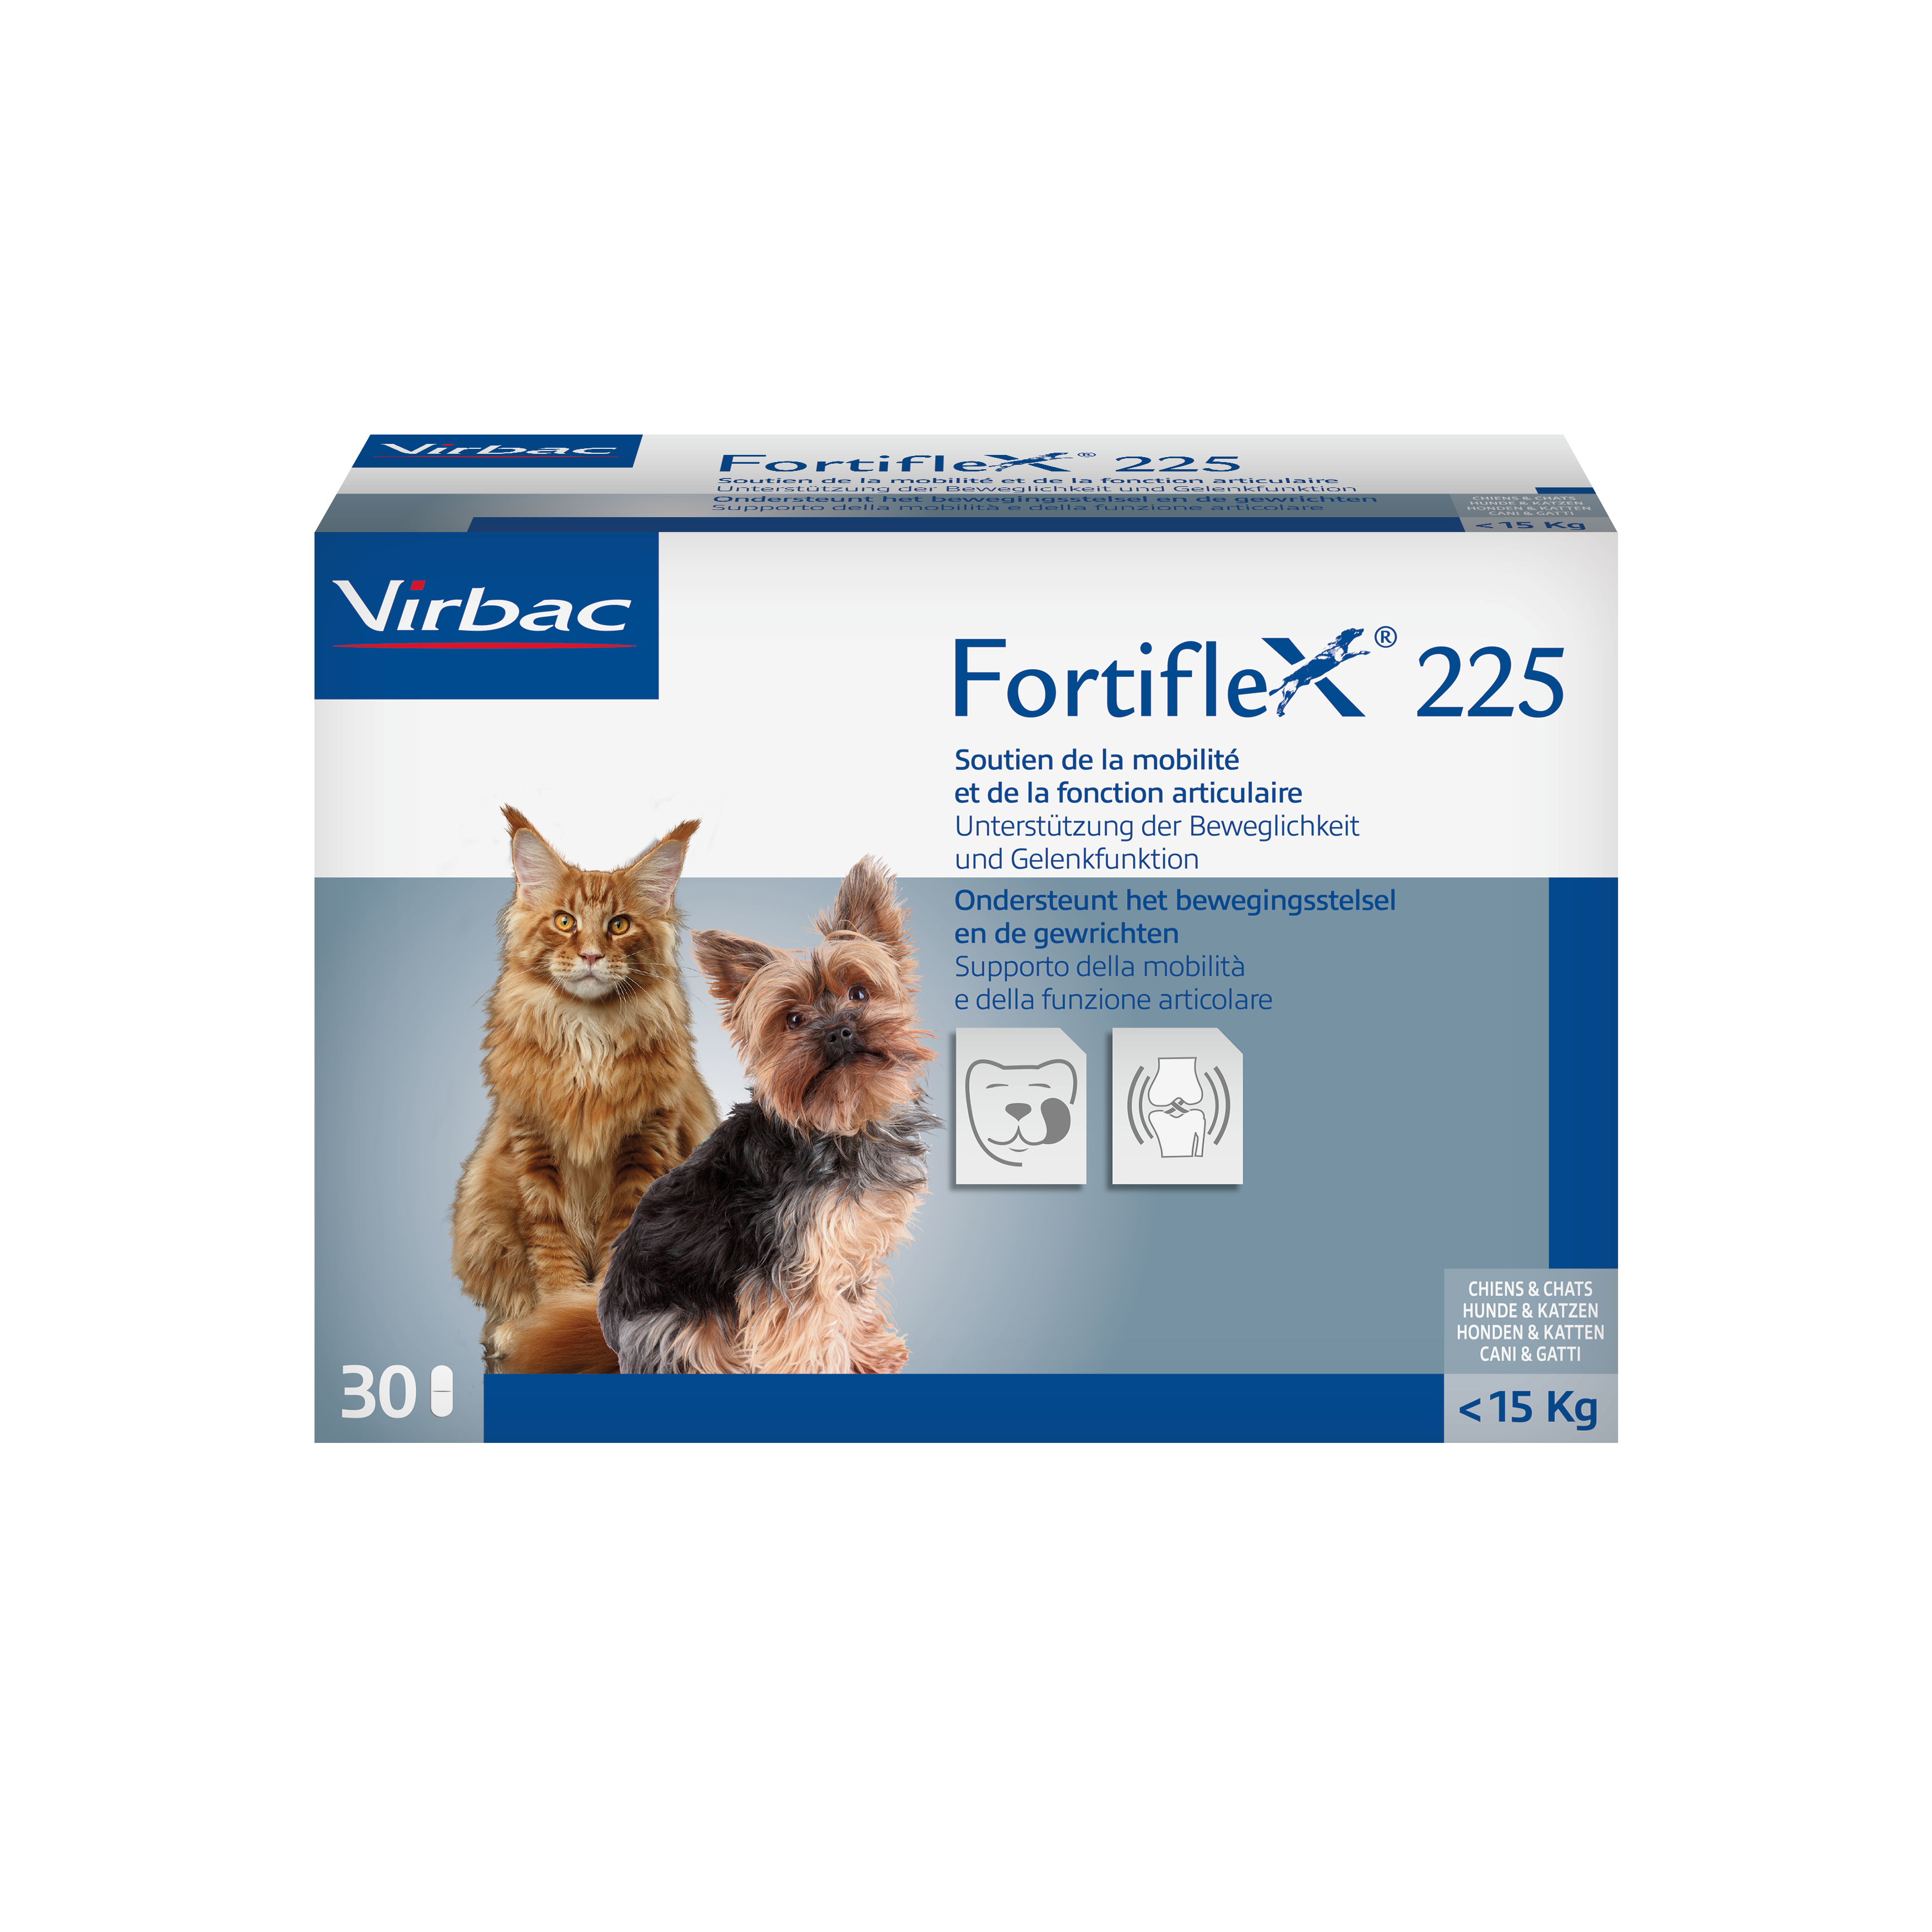 Fortiflex 225mg - Ergänzungsfuttermittel für Katzen und Hunde